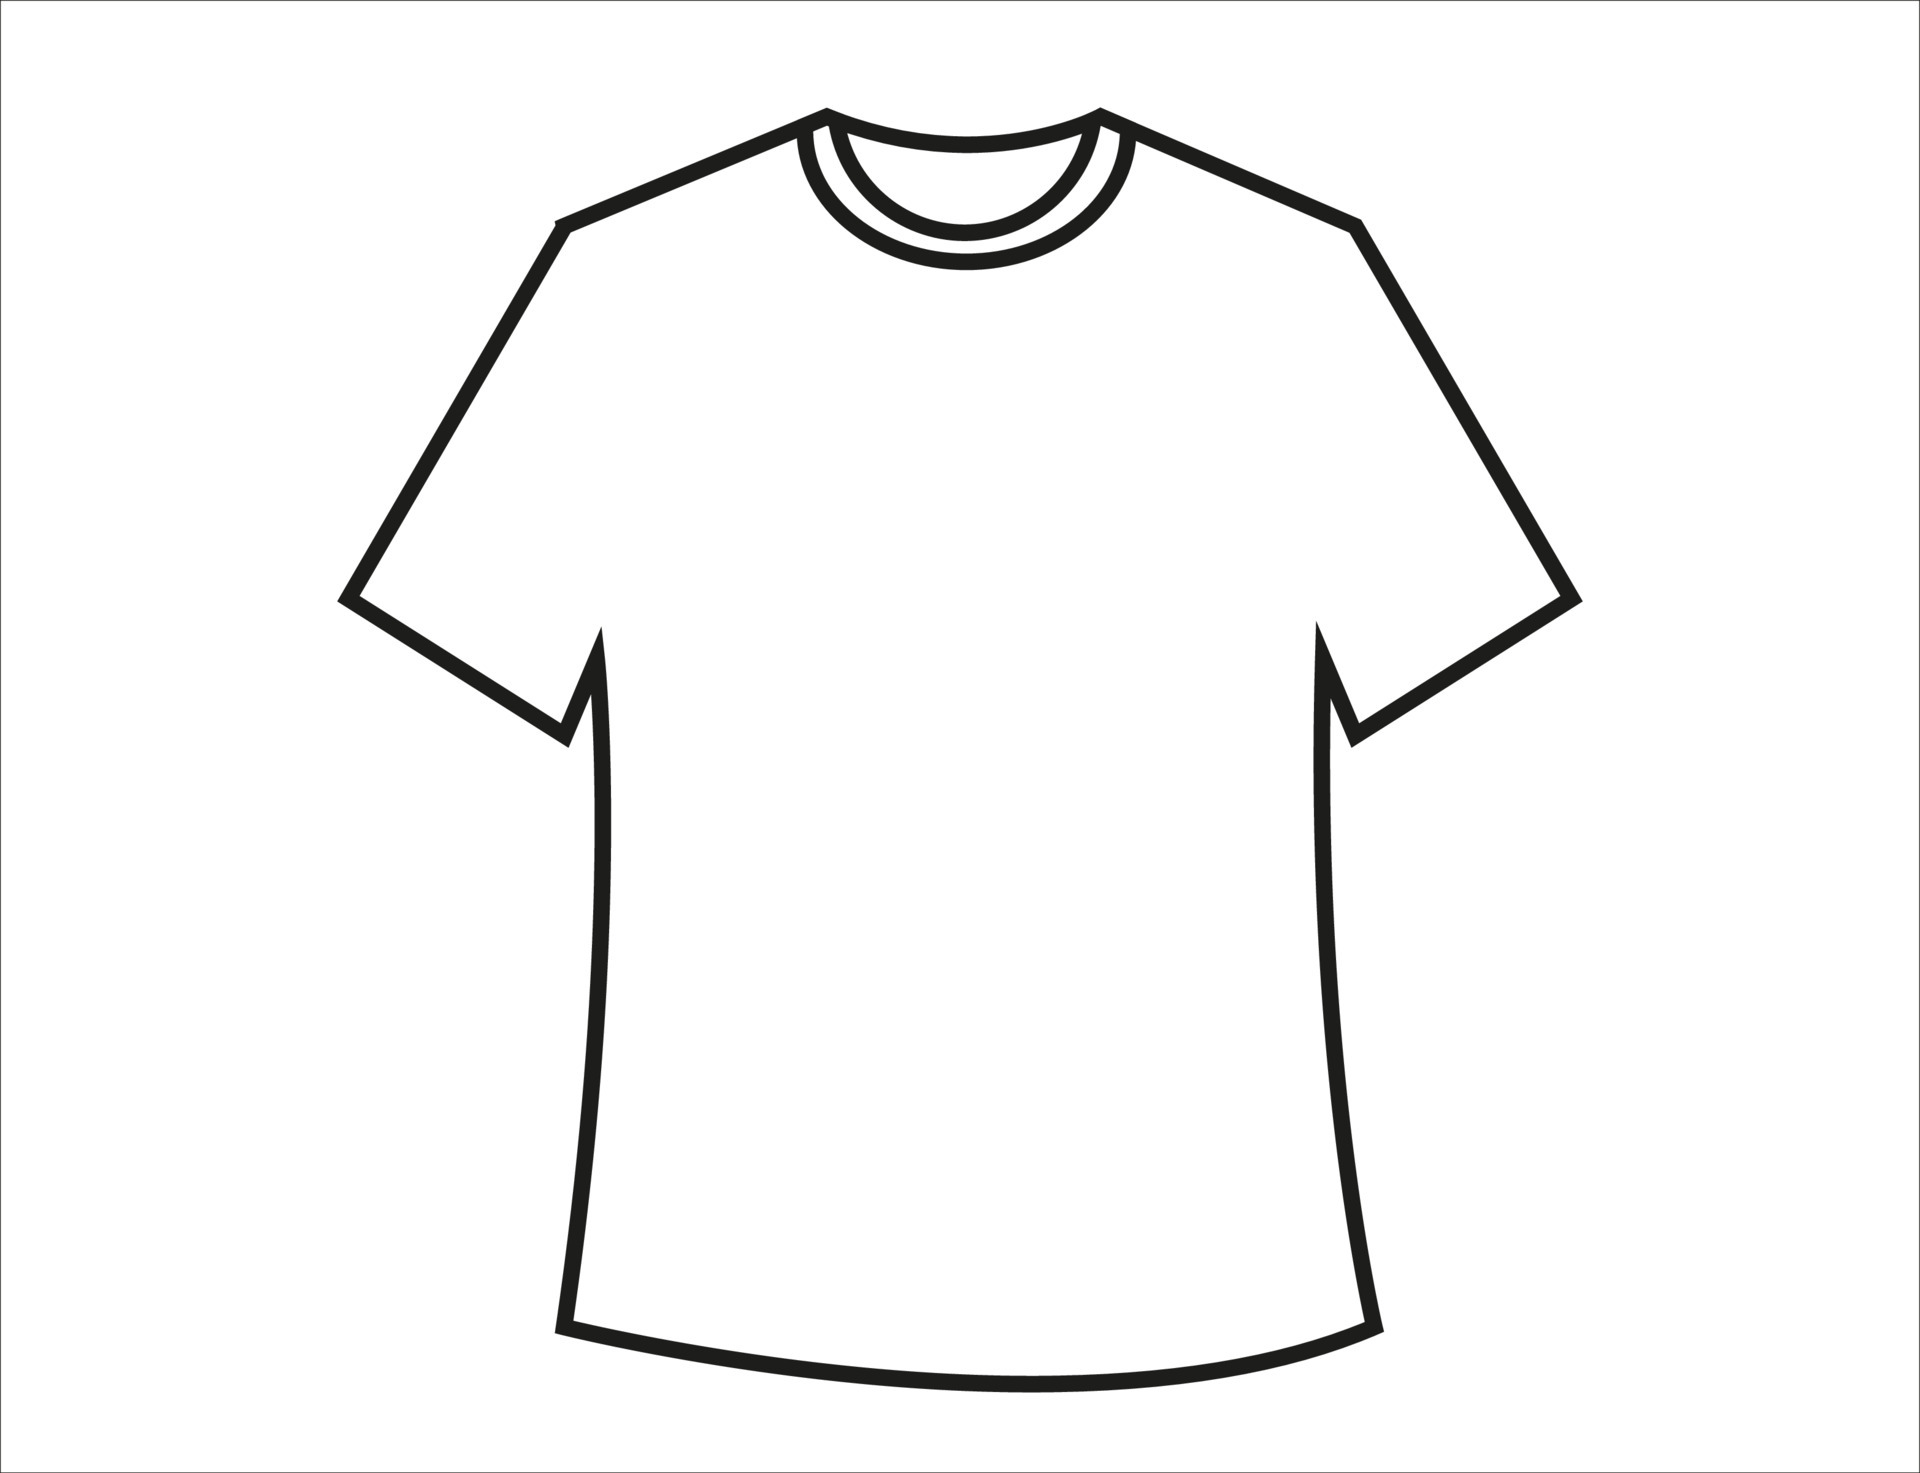 T-Shirt Design Template 5862235 Vector Art at Vecteezy